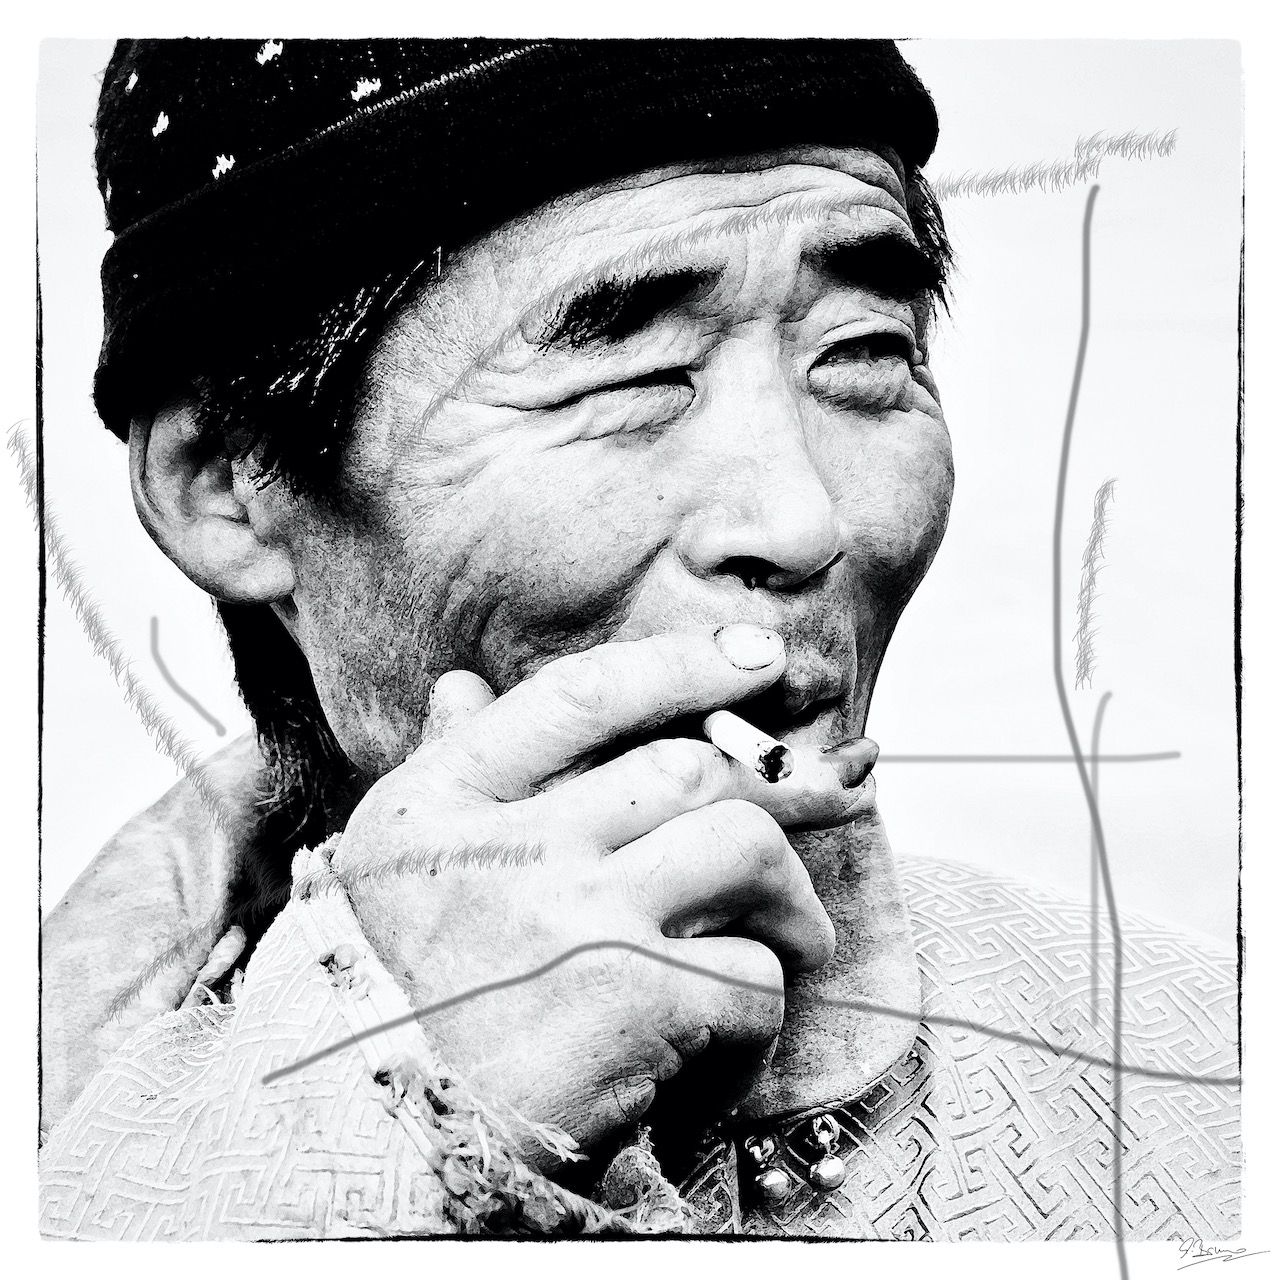 Ute Bruno peinture numérique noir et blanc Portrait d'un homme asiatique avec cigarette et casquette